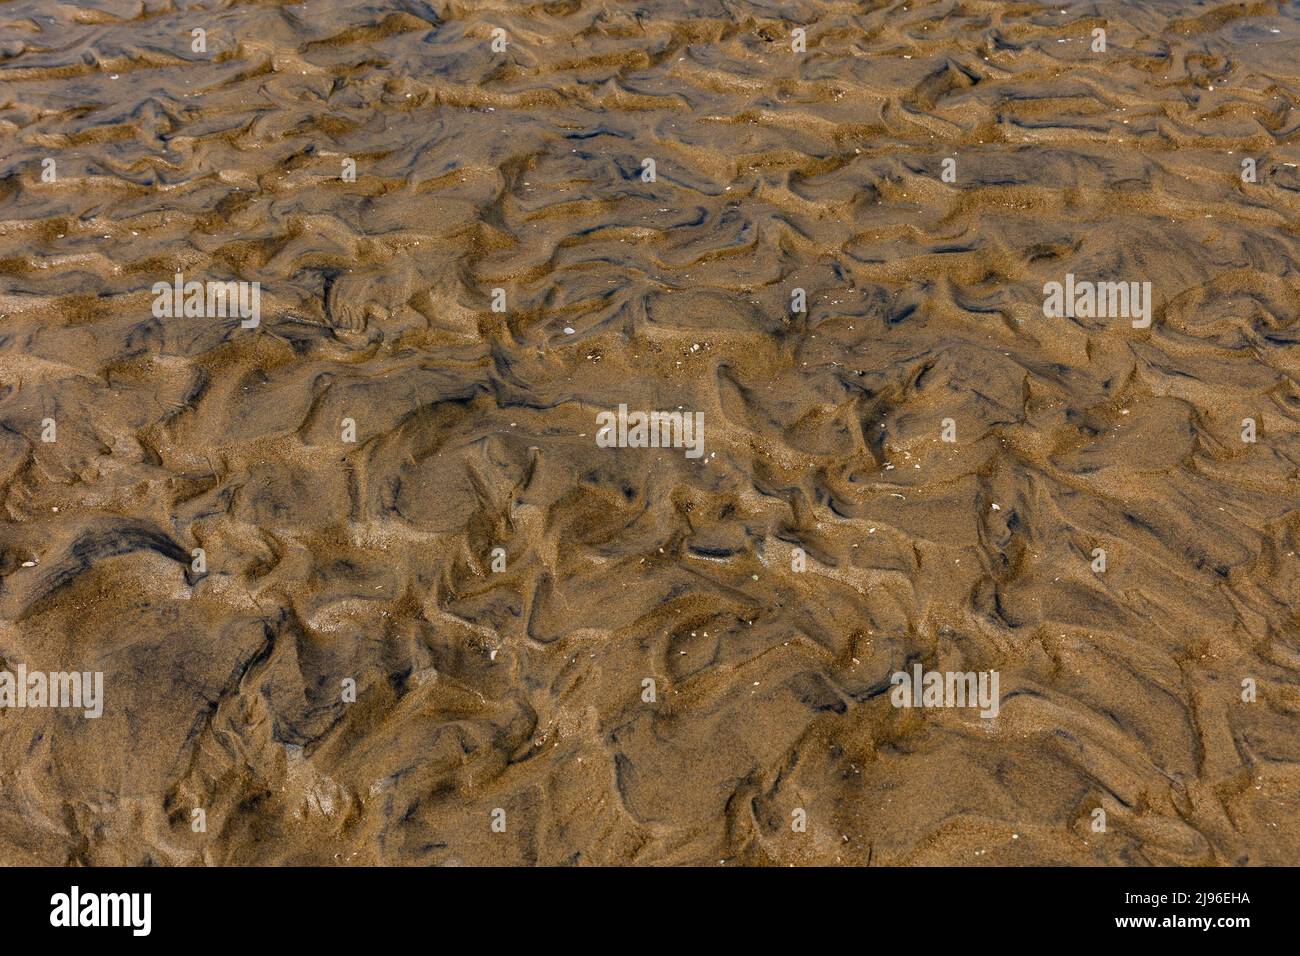 Belle et naturelle conception de l'écoulement de l'eau vue sur le sable dans les zones peu profondes de la rivière Karli Banque D'Images